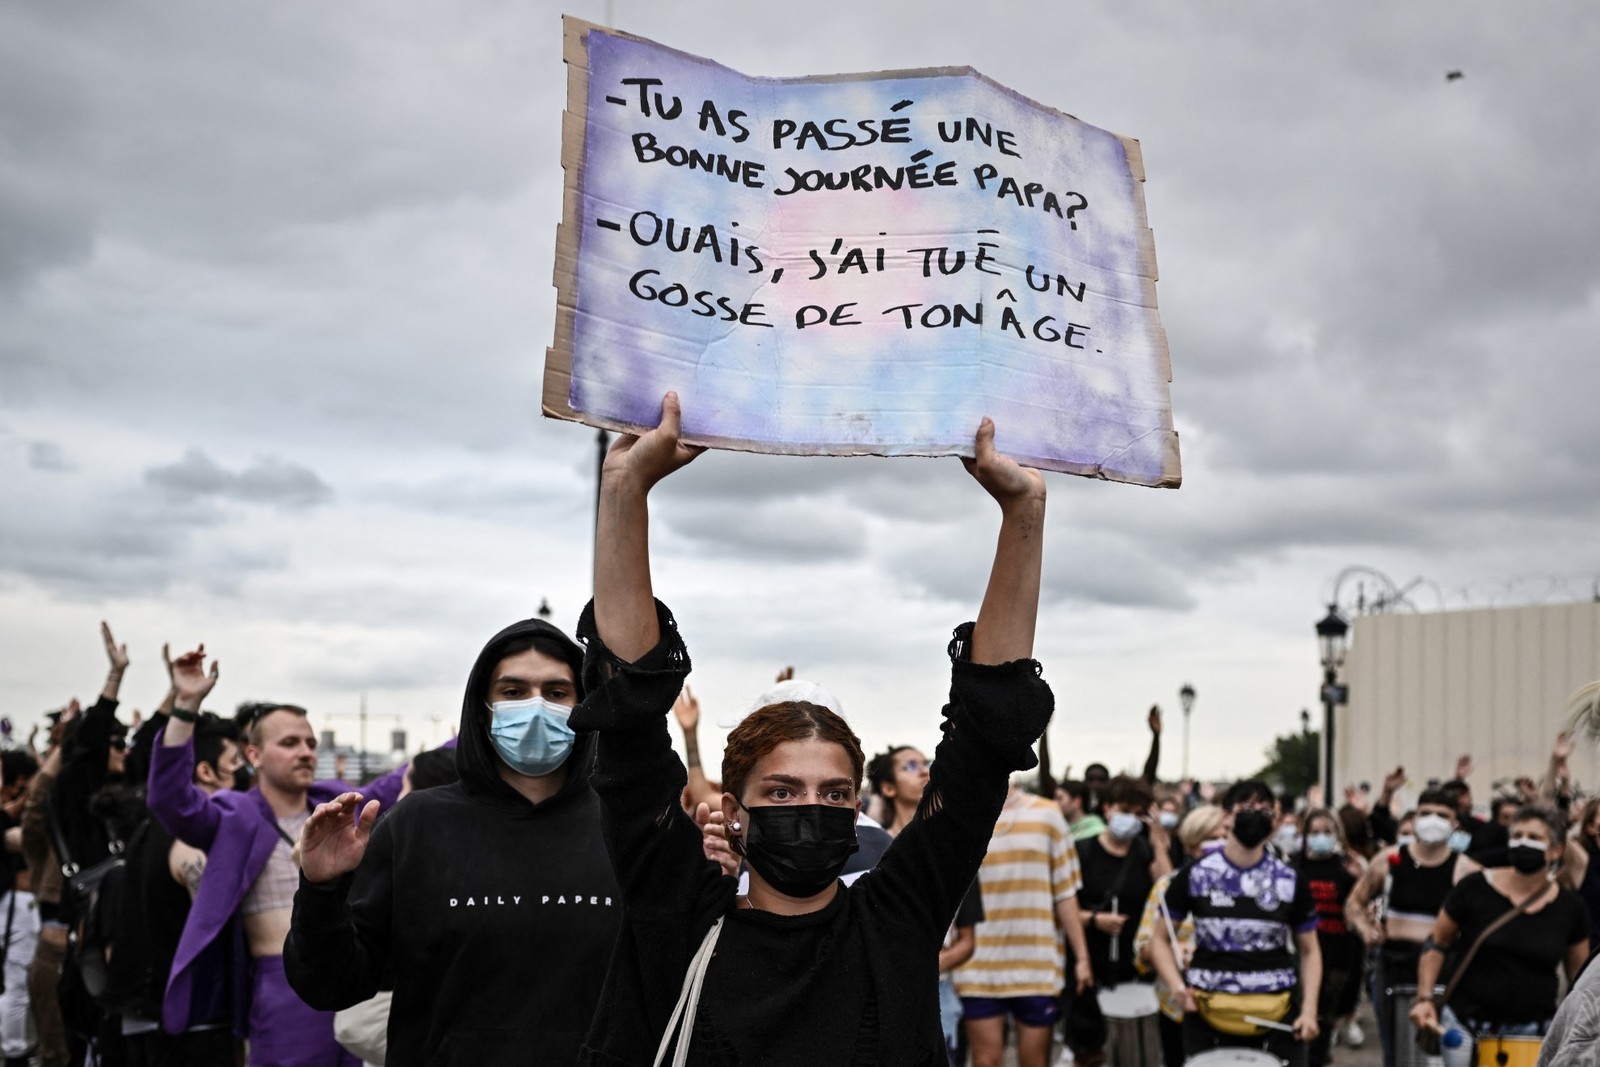 Um manifestante segura um cartaz com os dizeres "Você teve um bom dia, pai? - Sim, matei um garoto da sua idade", em Bordeaux, sudoeste da França — Foto: PHILIPPE LOPEZ / AFP